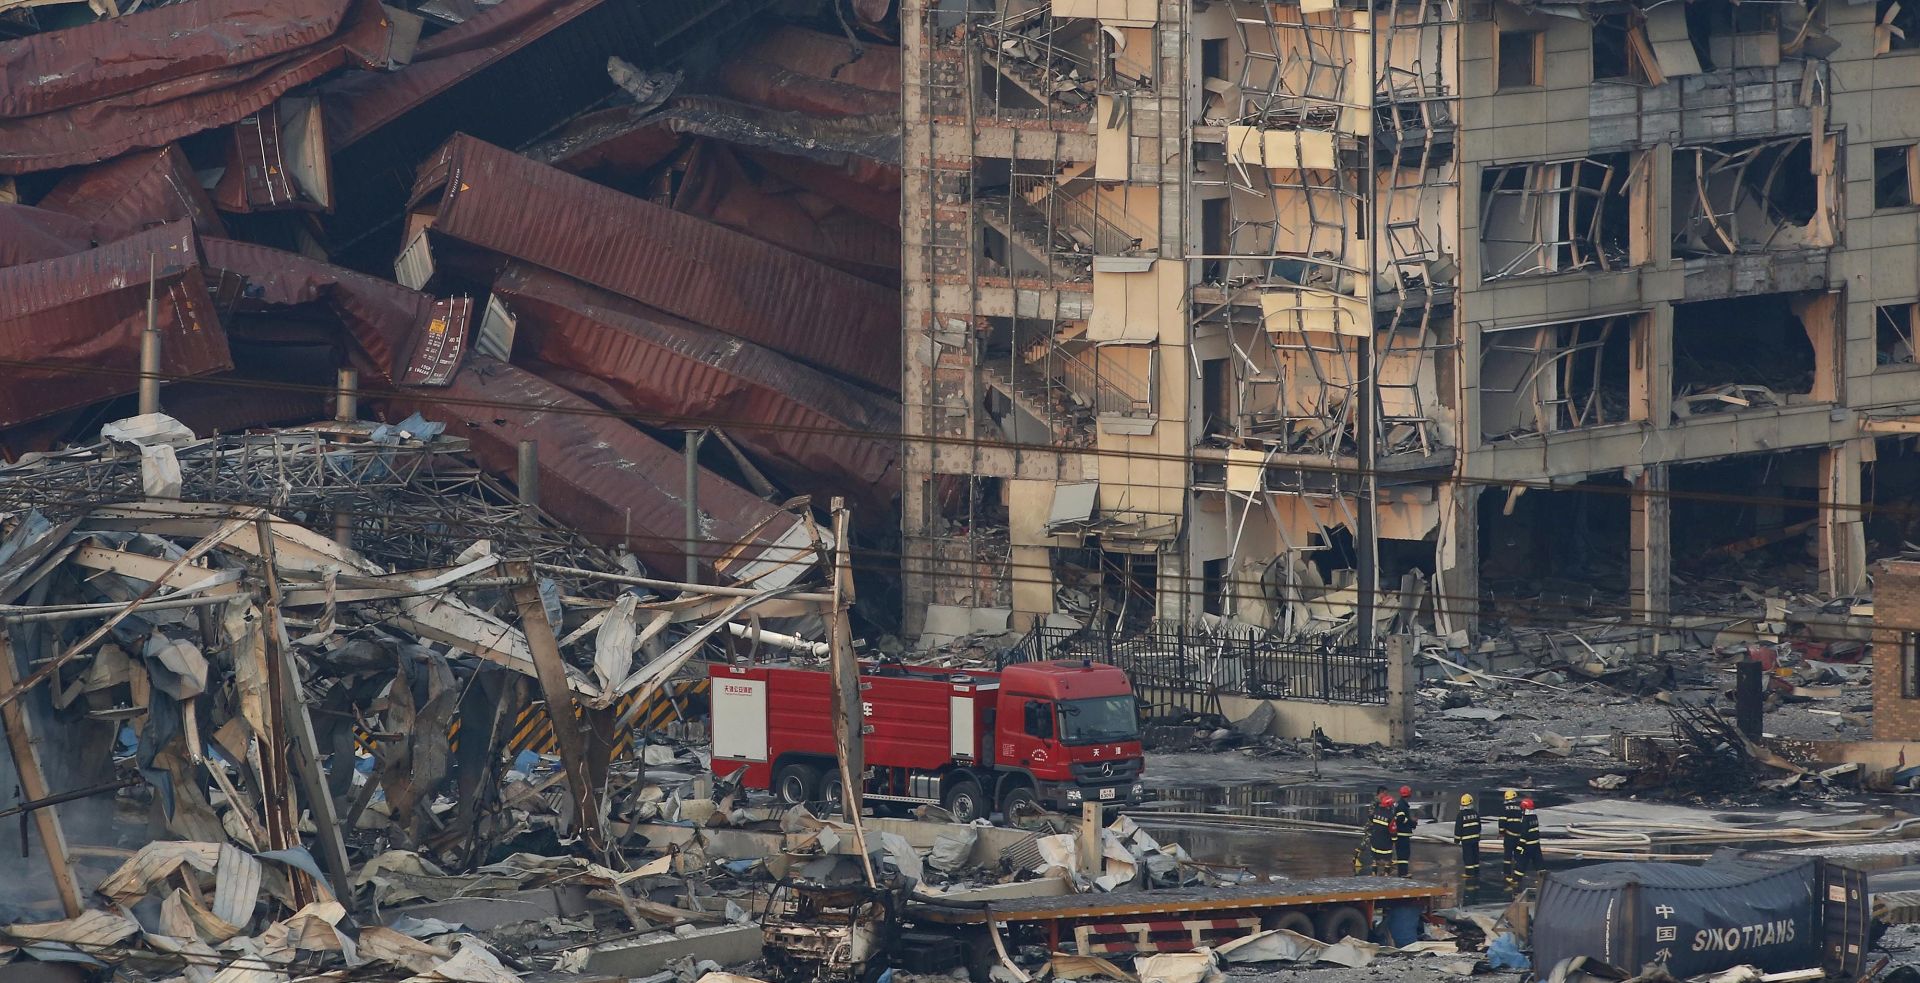 NOVE BROJKE U eksplozijama u Tianjinu 123 mrtvih, 624 ozlijeđenih, još 50 nestalih